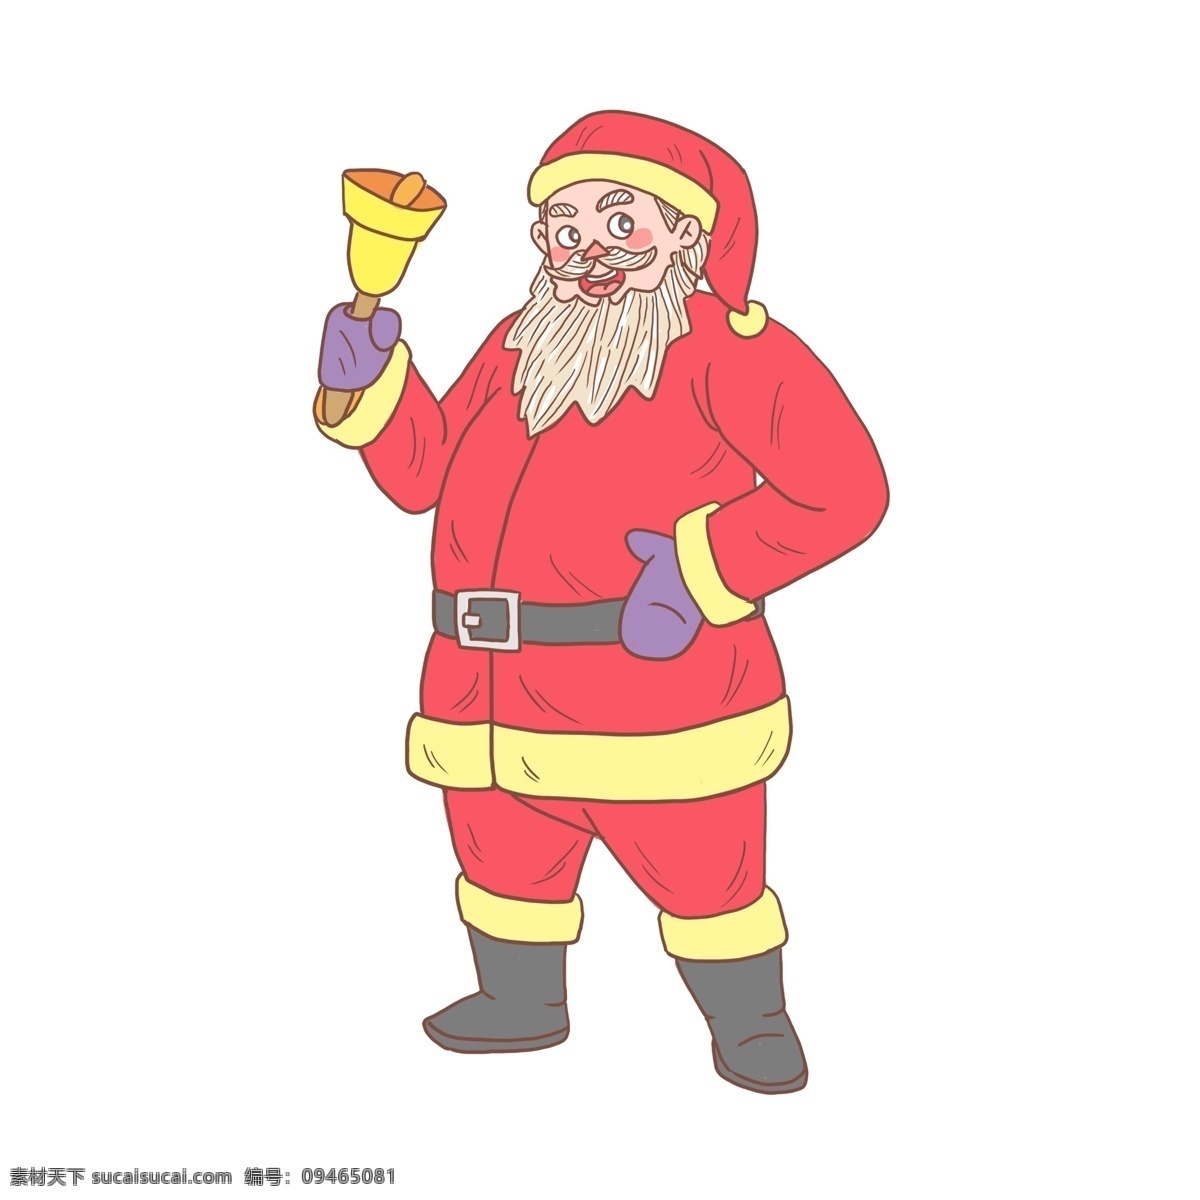 圣诞老人 卡通 手绘 商用 元素 圣诞节 圣诞树 礼物 铃铛 圣诞礼物